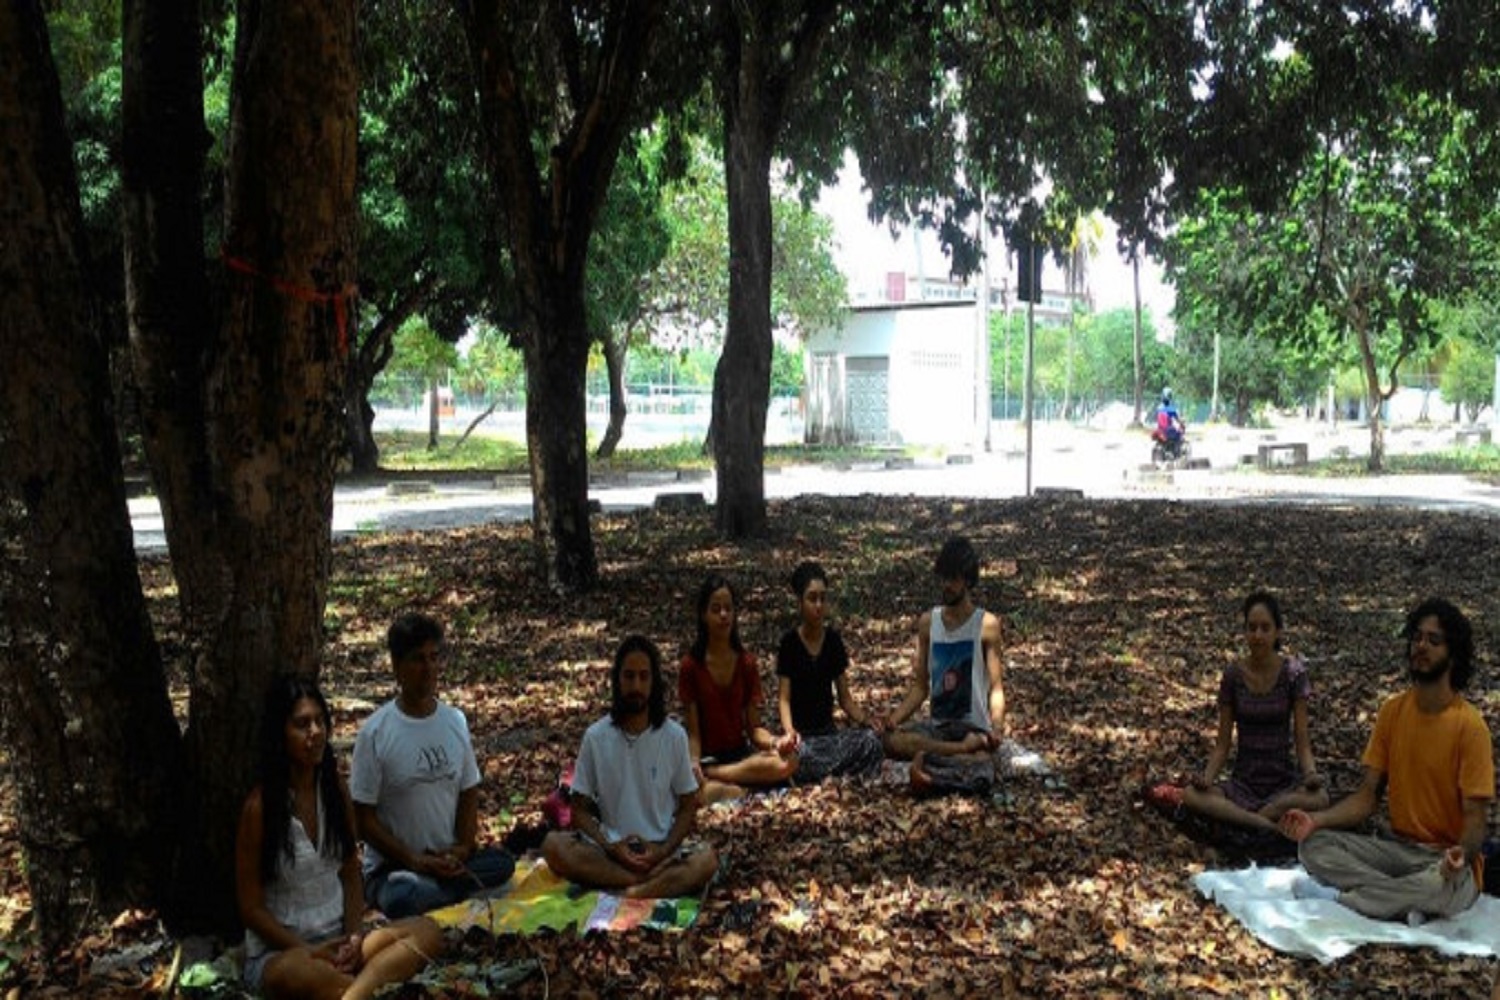 Ação realizada antes da pandemia no campus de São Cristóvão. (foto: arquivo pessoal)